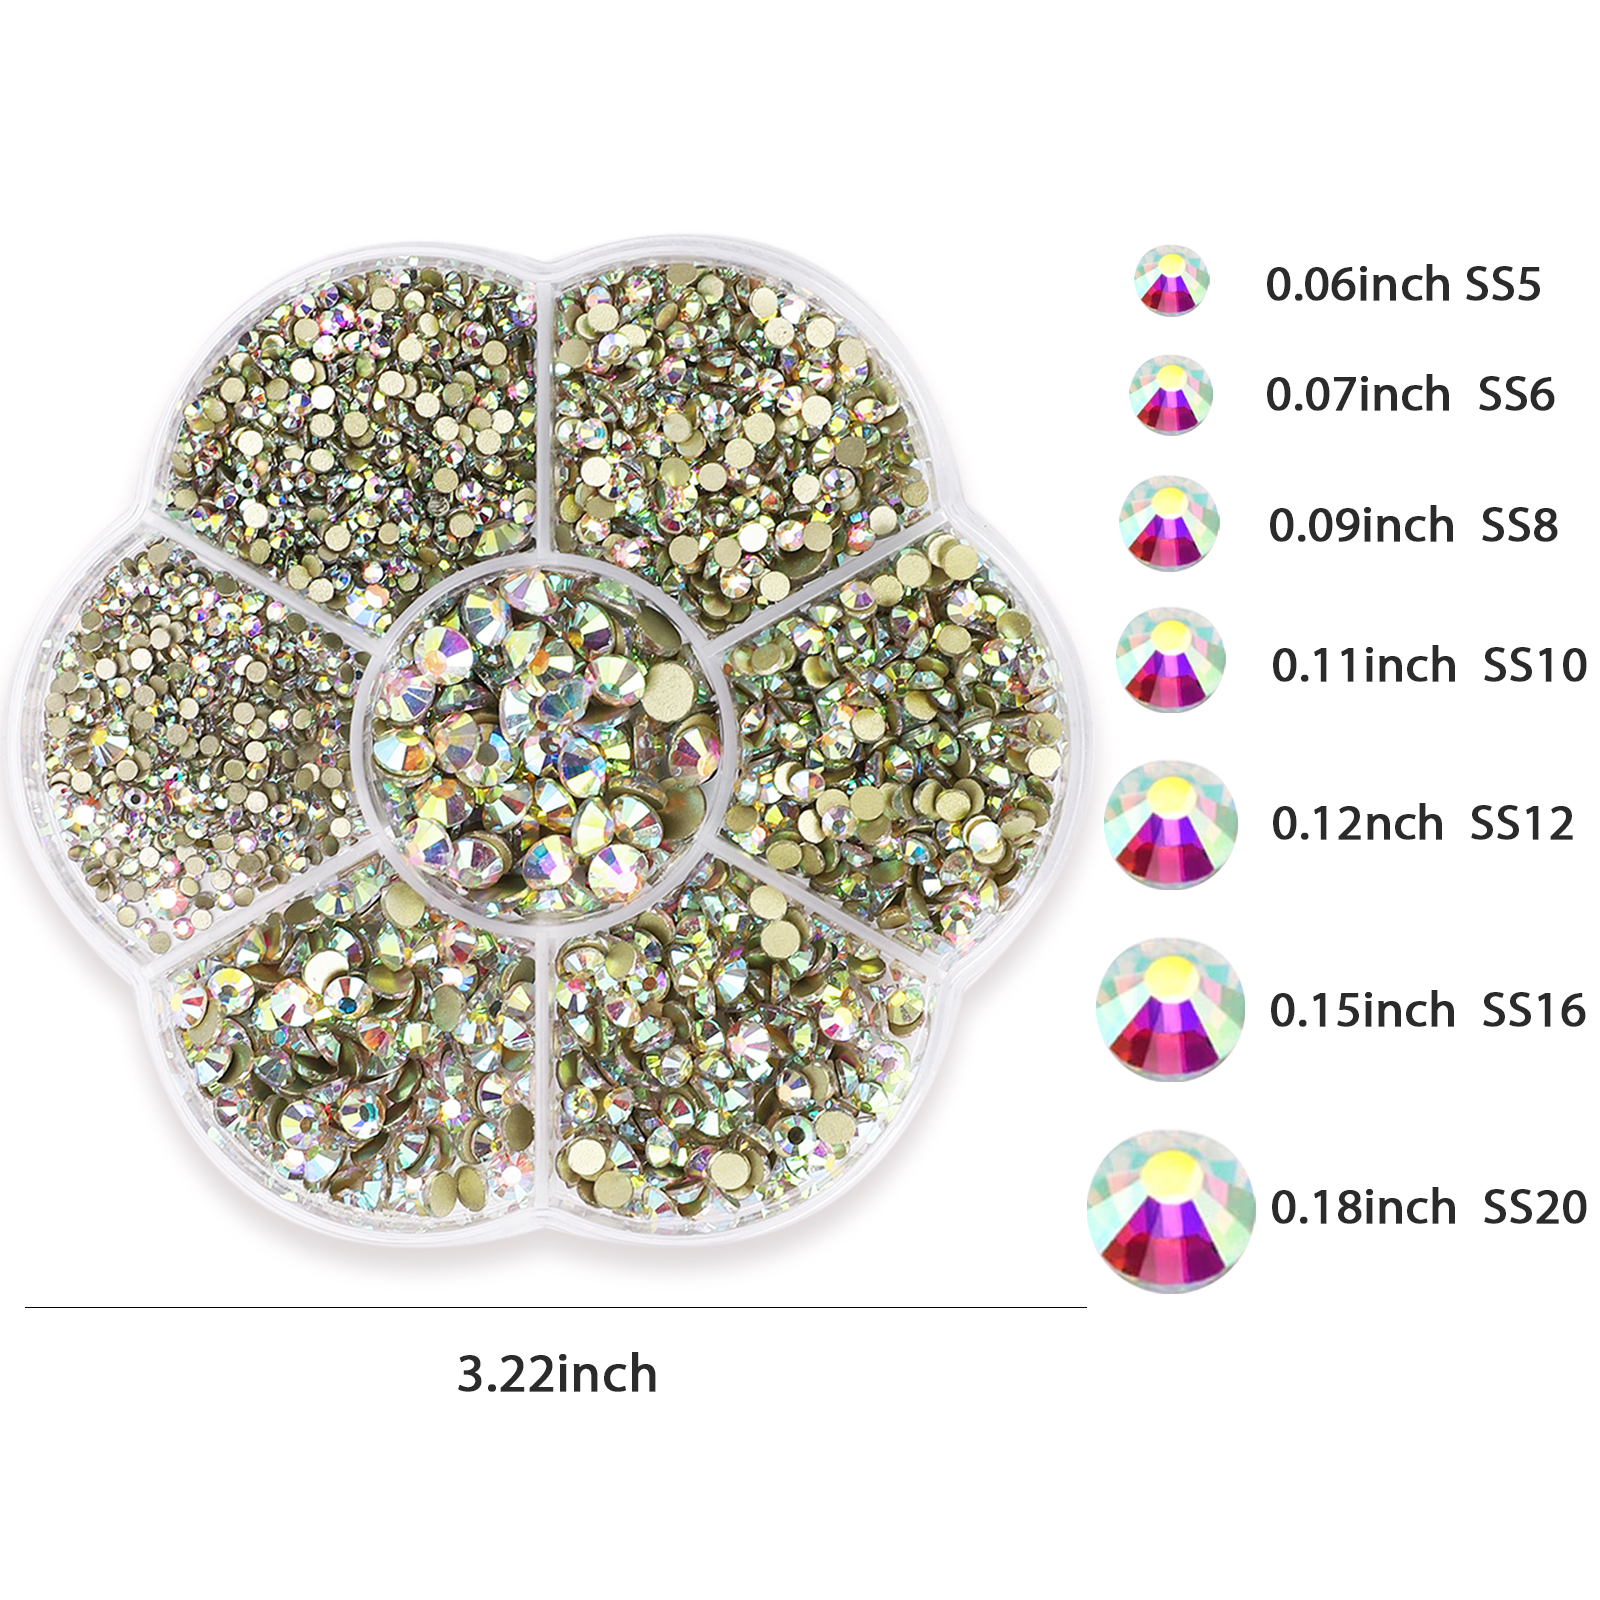 Cristales falsos de acrílico Super Z Outlet® de colores, con forma de gemas  del tesoro, diamantes y piedras preciosas redondas para decorar mesas